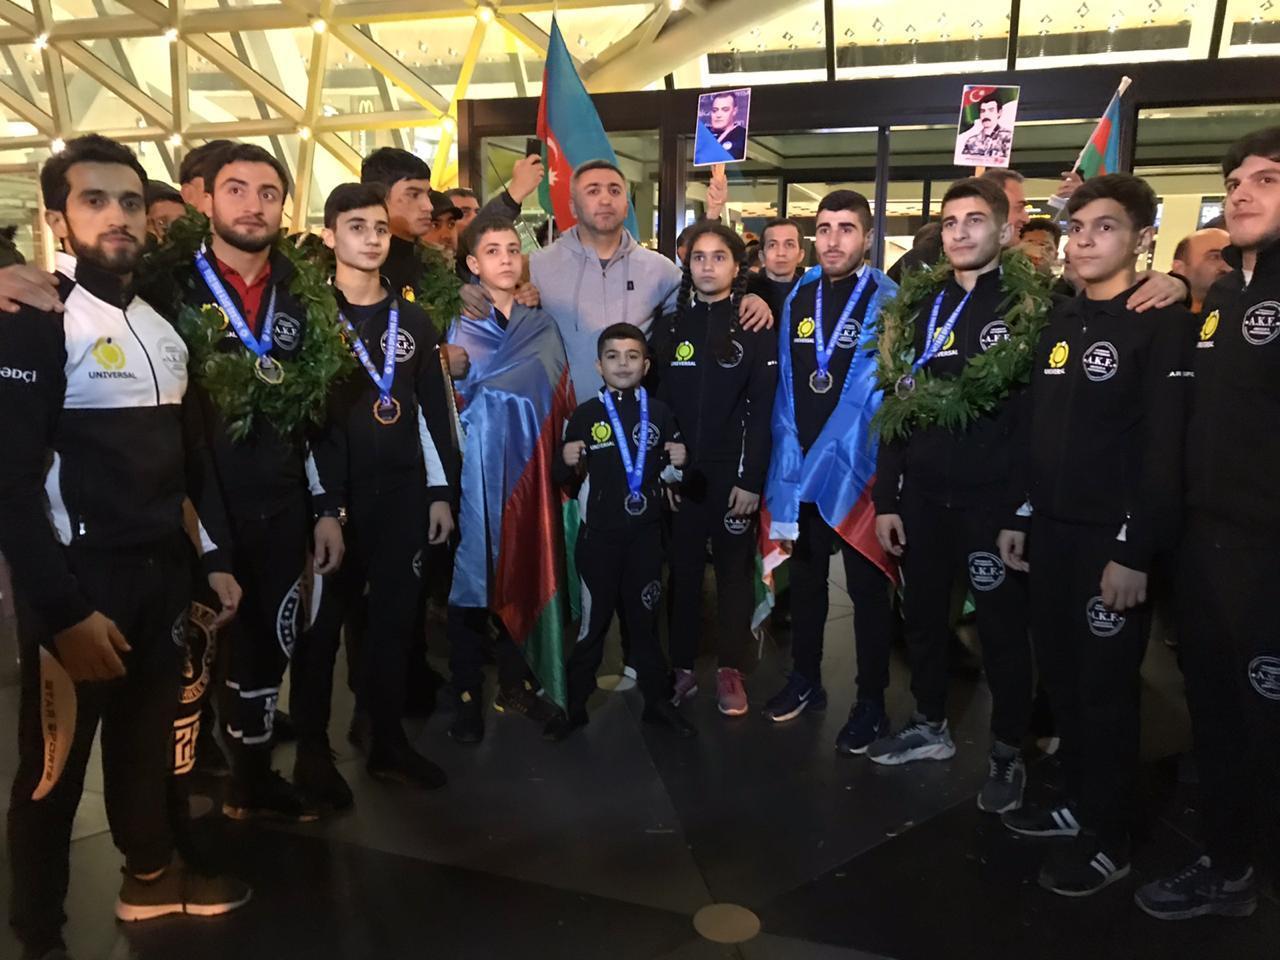 Азербайджанские кикбоксеры завоевали 7 медалей в Украине